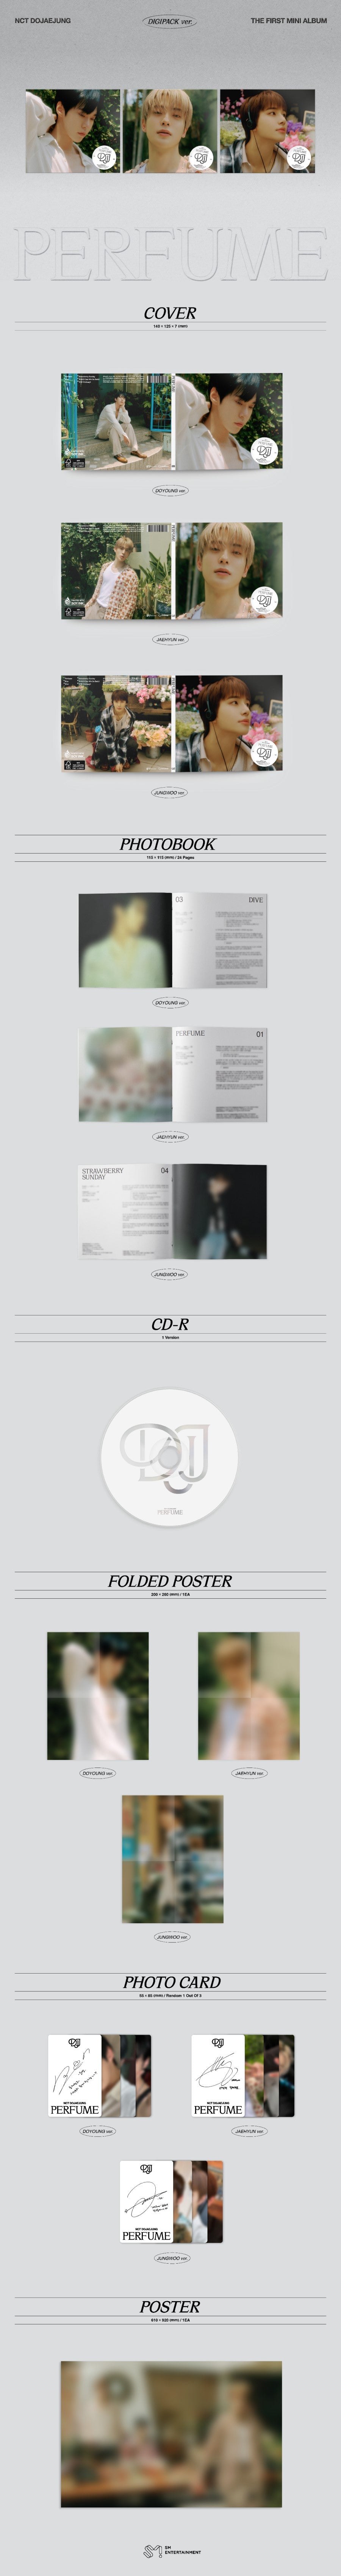 NCT DOJAEJUNG Mini Album Vol. 1 - PERFUME (Digipack Version)